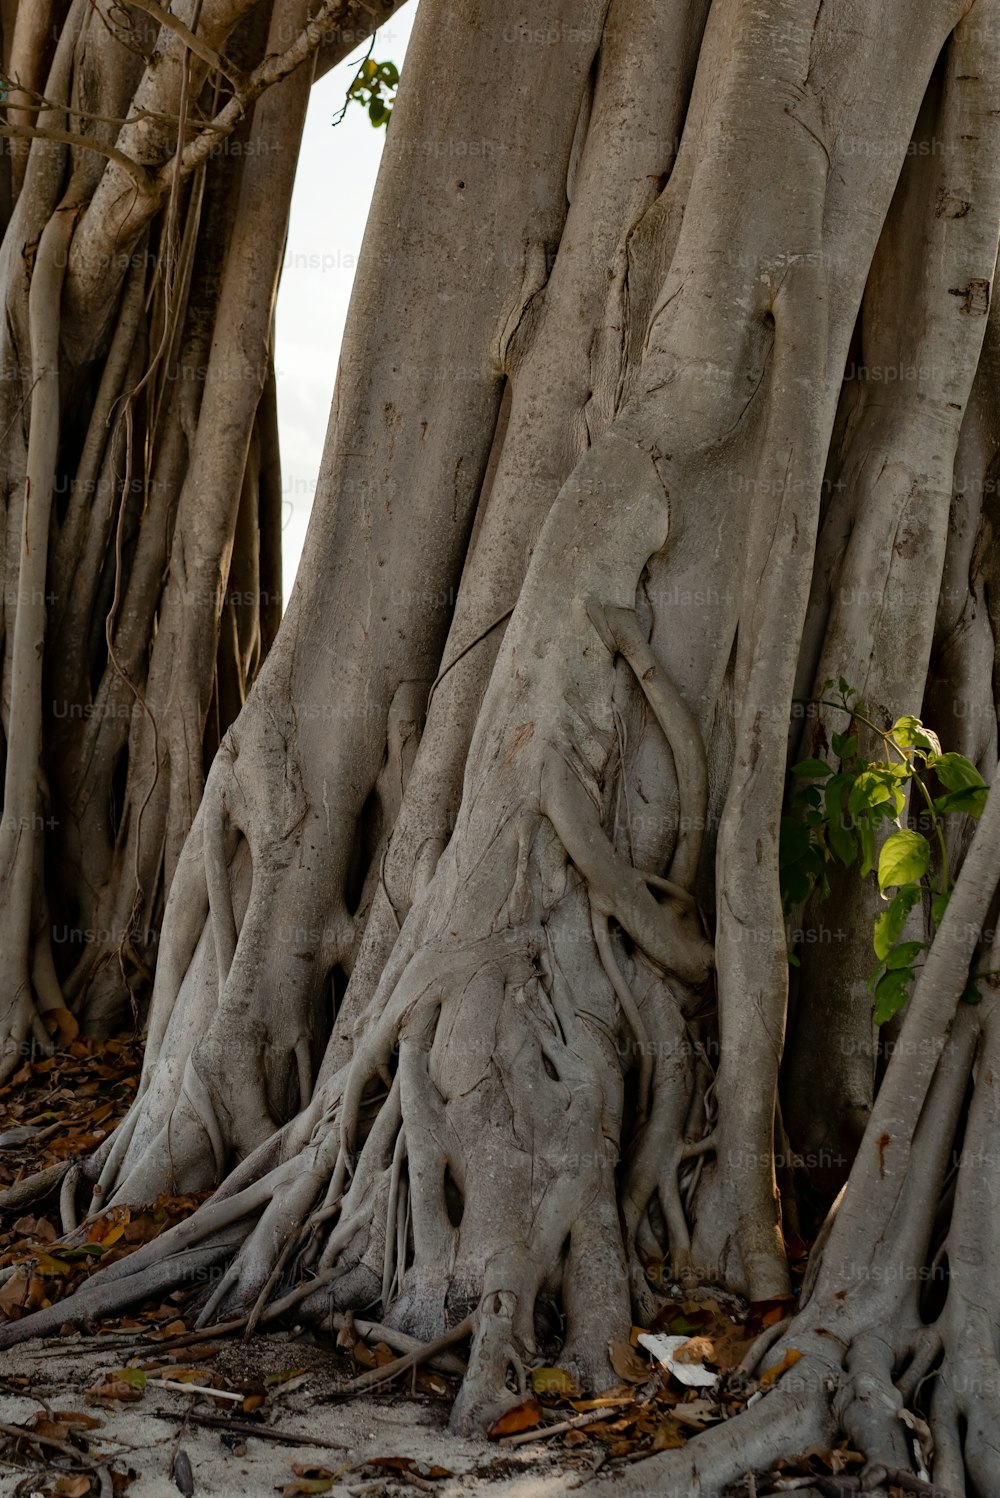 Un grupo de árboles con raíces muy grandes